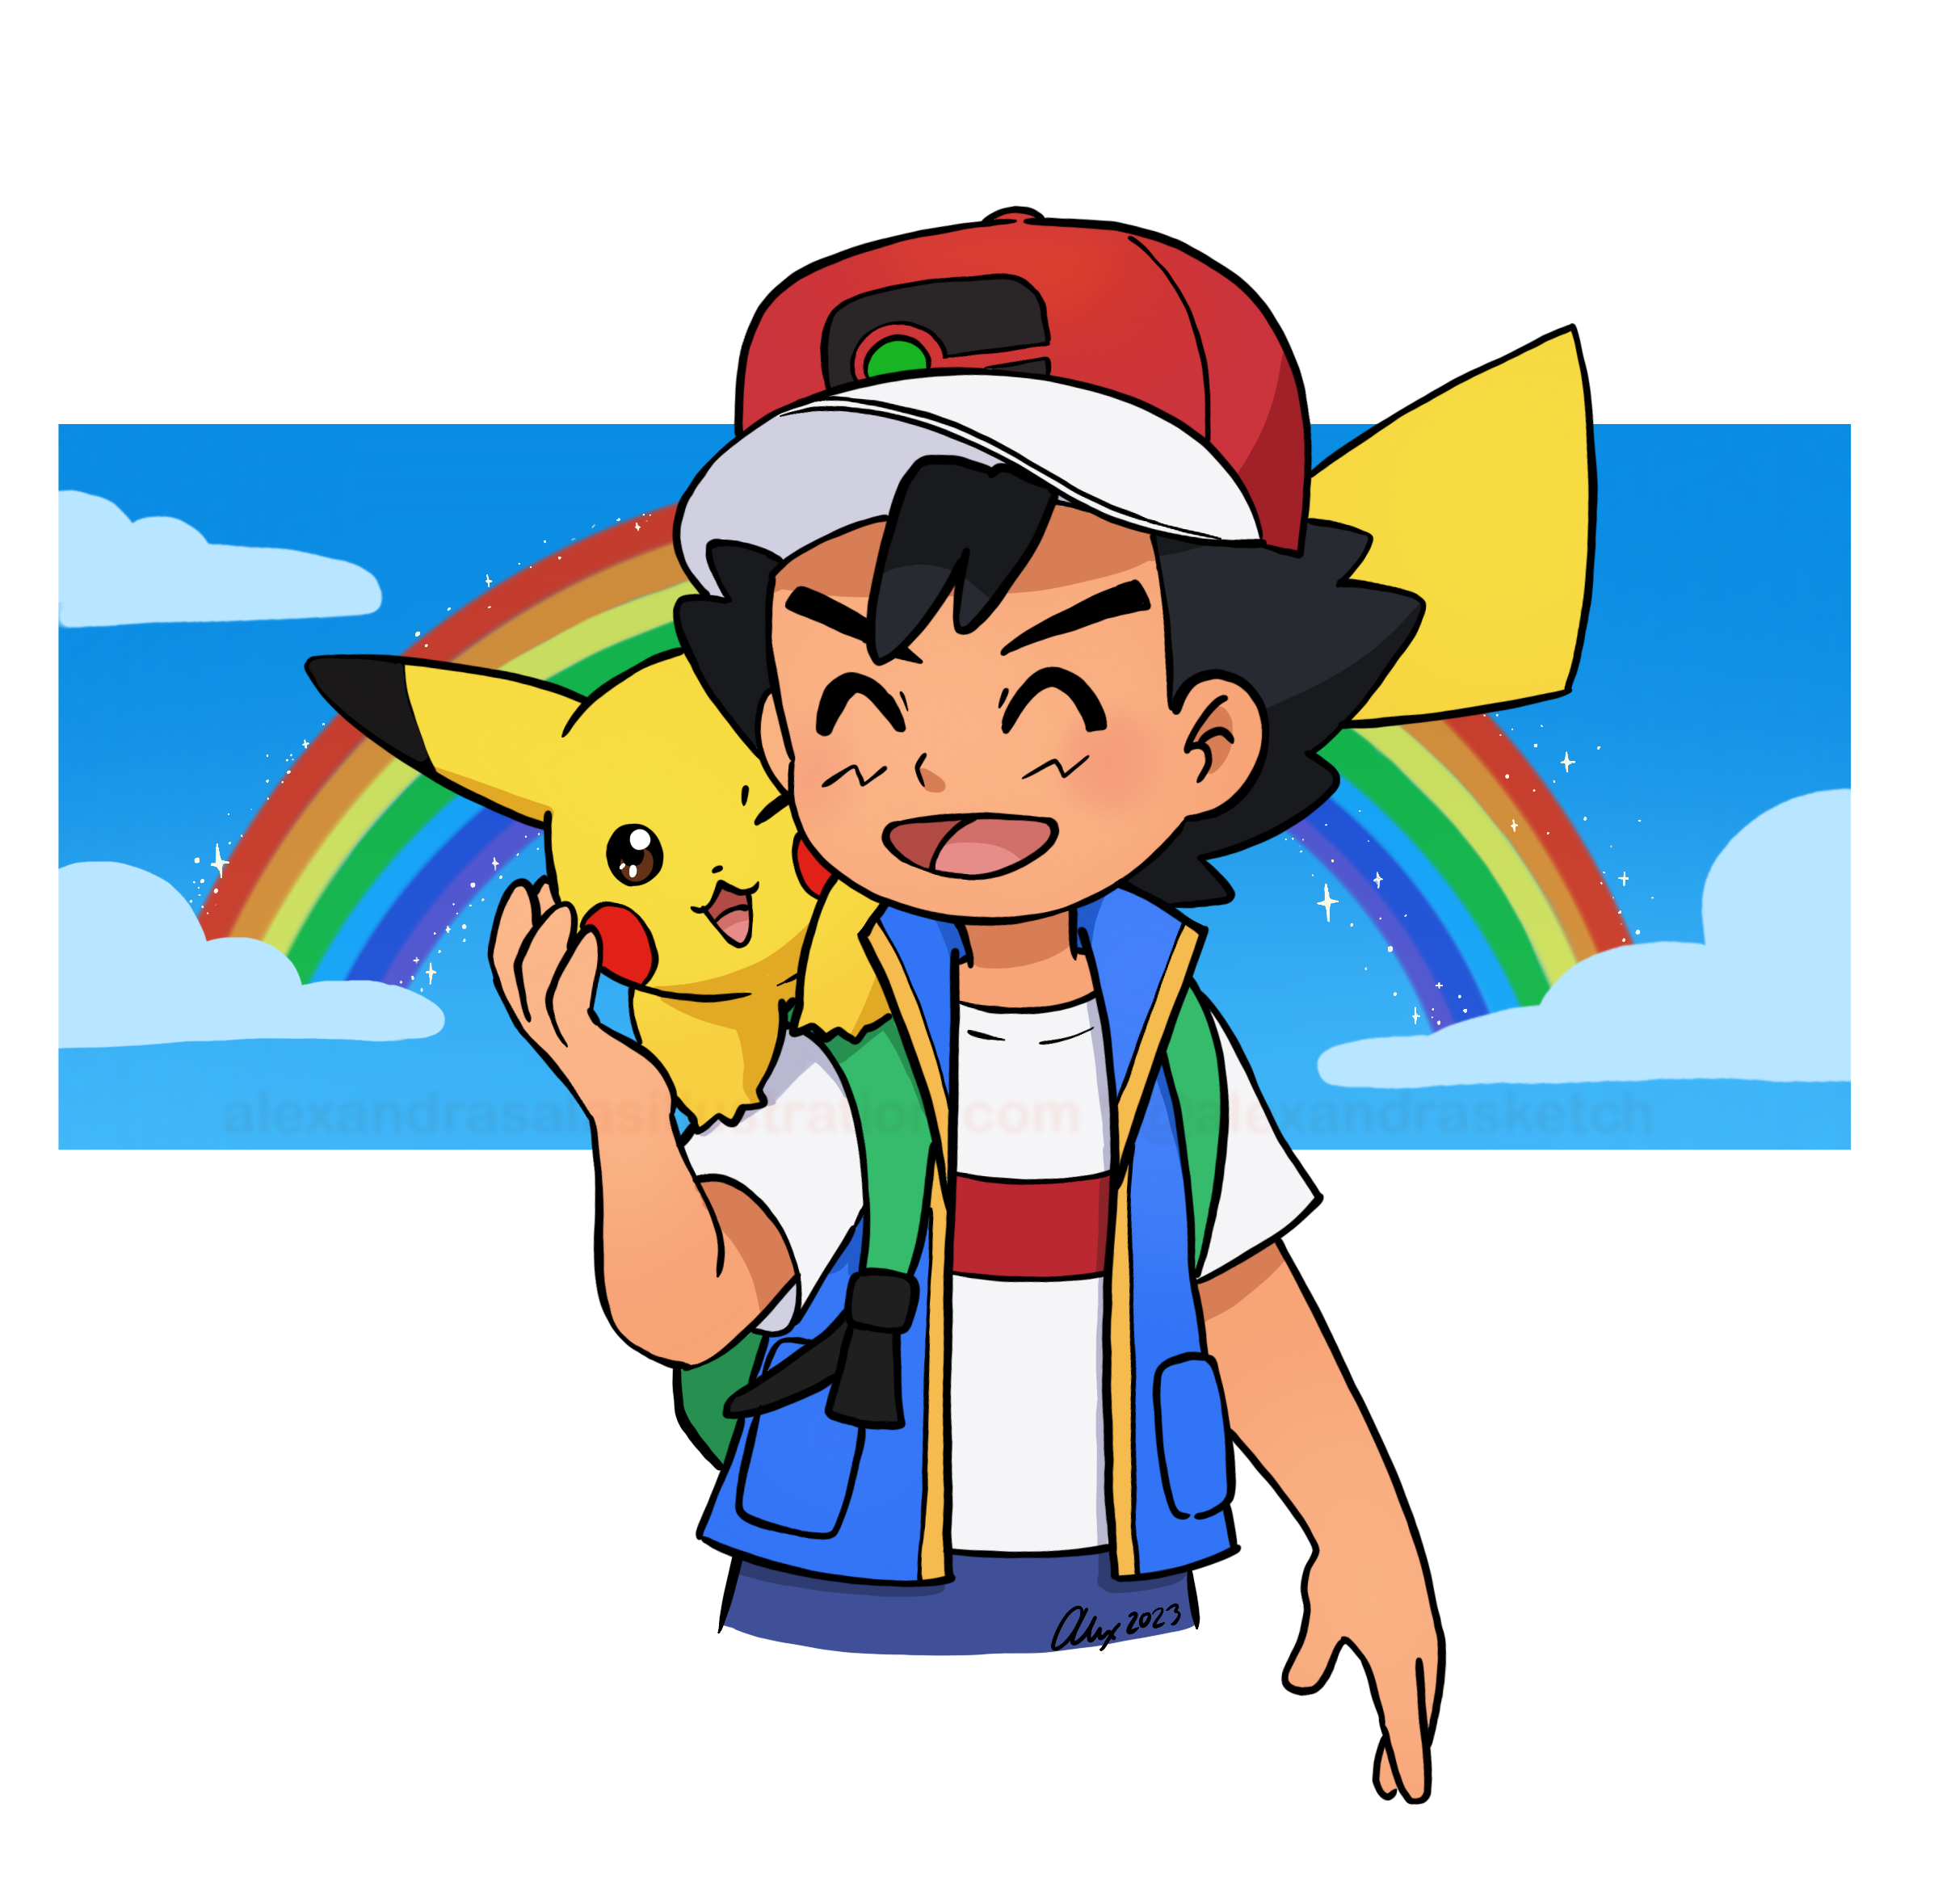 Satoshi_and_Pikachu.png